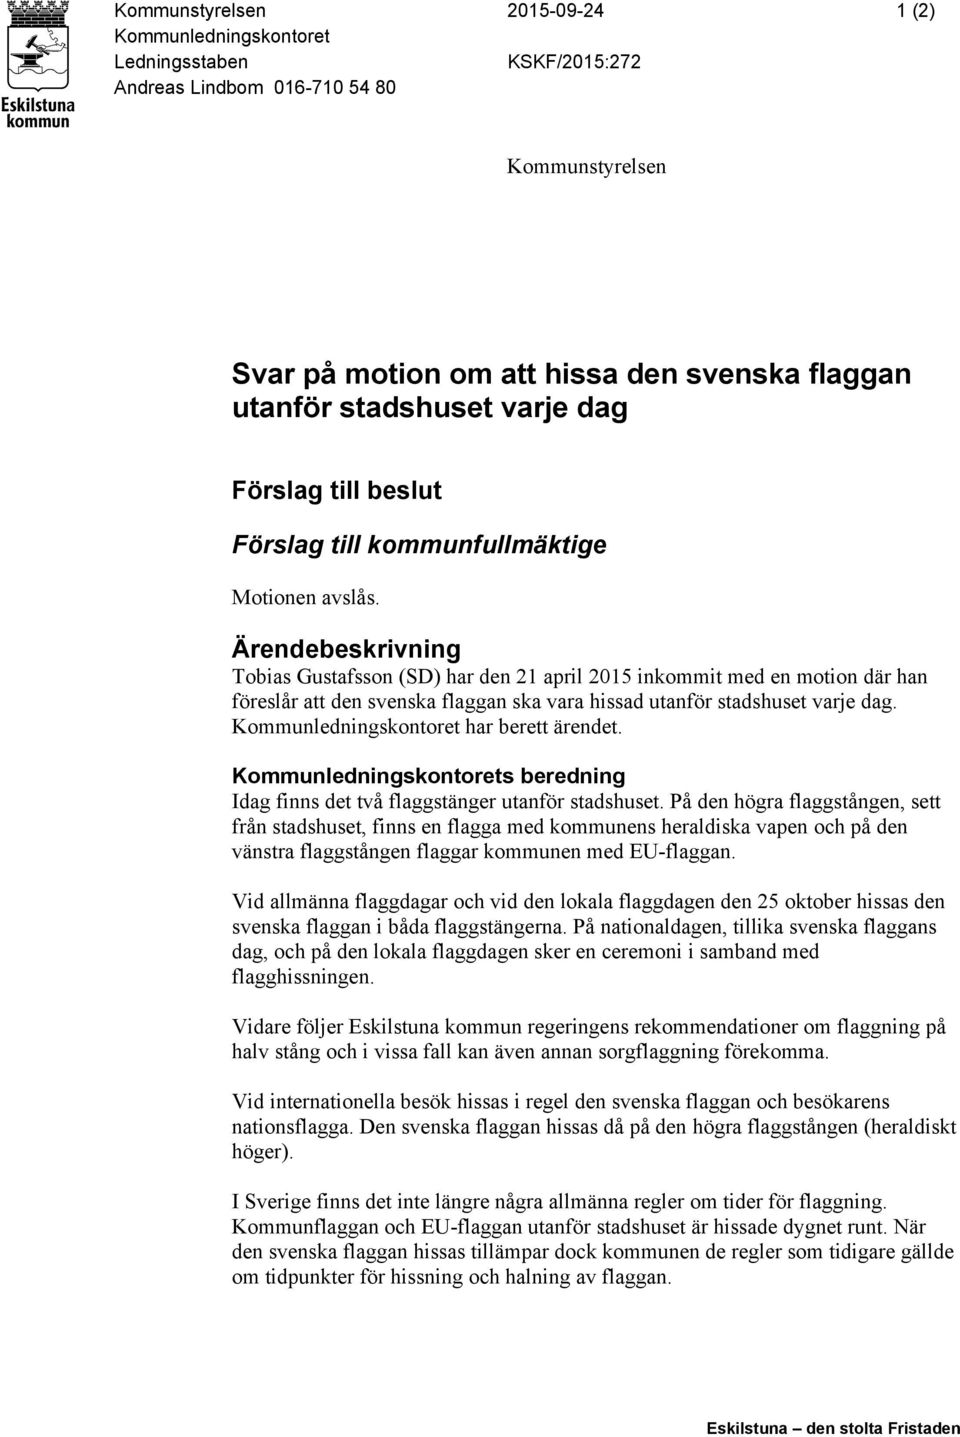 Ärendebeskrivning Tobias Gustafsson (SD) har den 21 april 2015 inkommit med en motion där han föreslår att den svenska flaggan ska vara hissad utanför stadshuset varje dag.